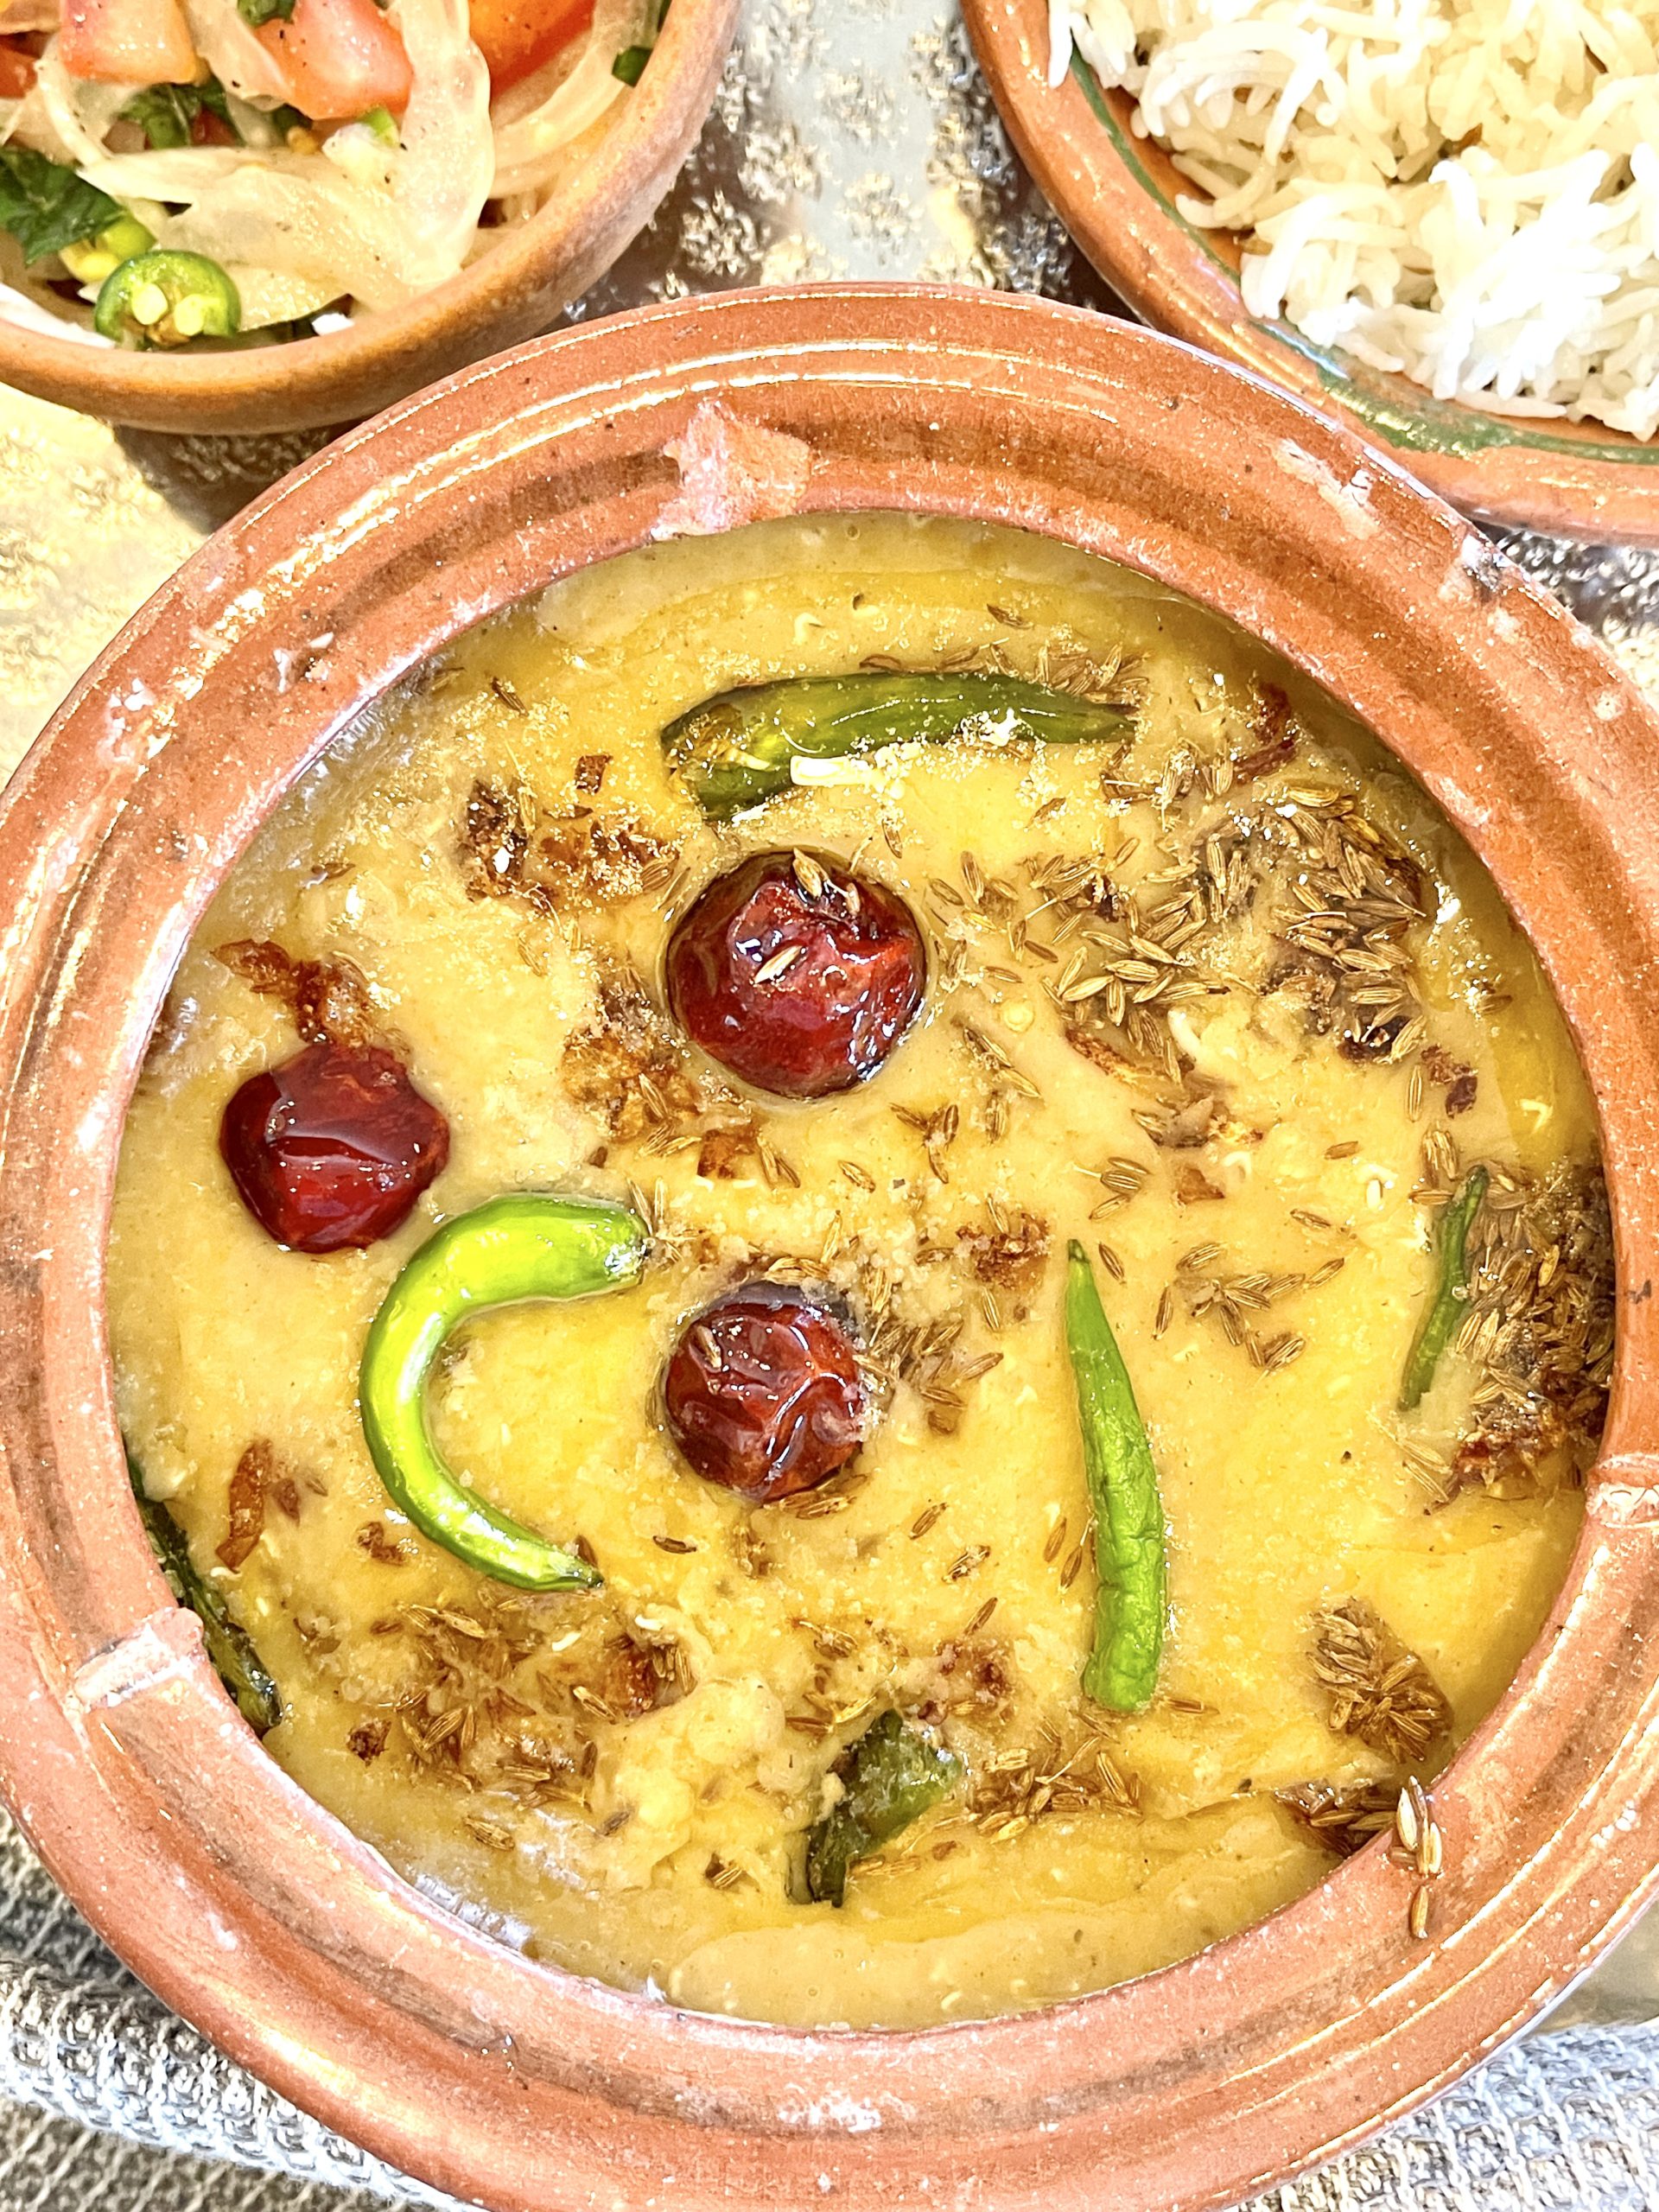 Masoor dal with Rice and kachoomar salad